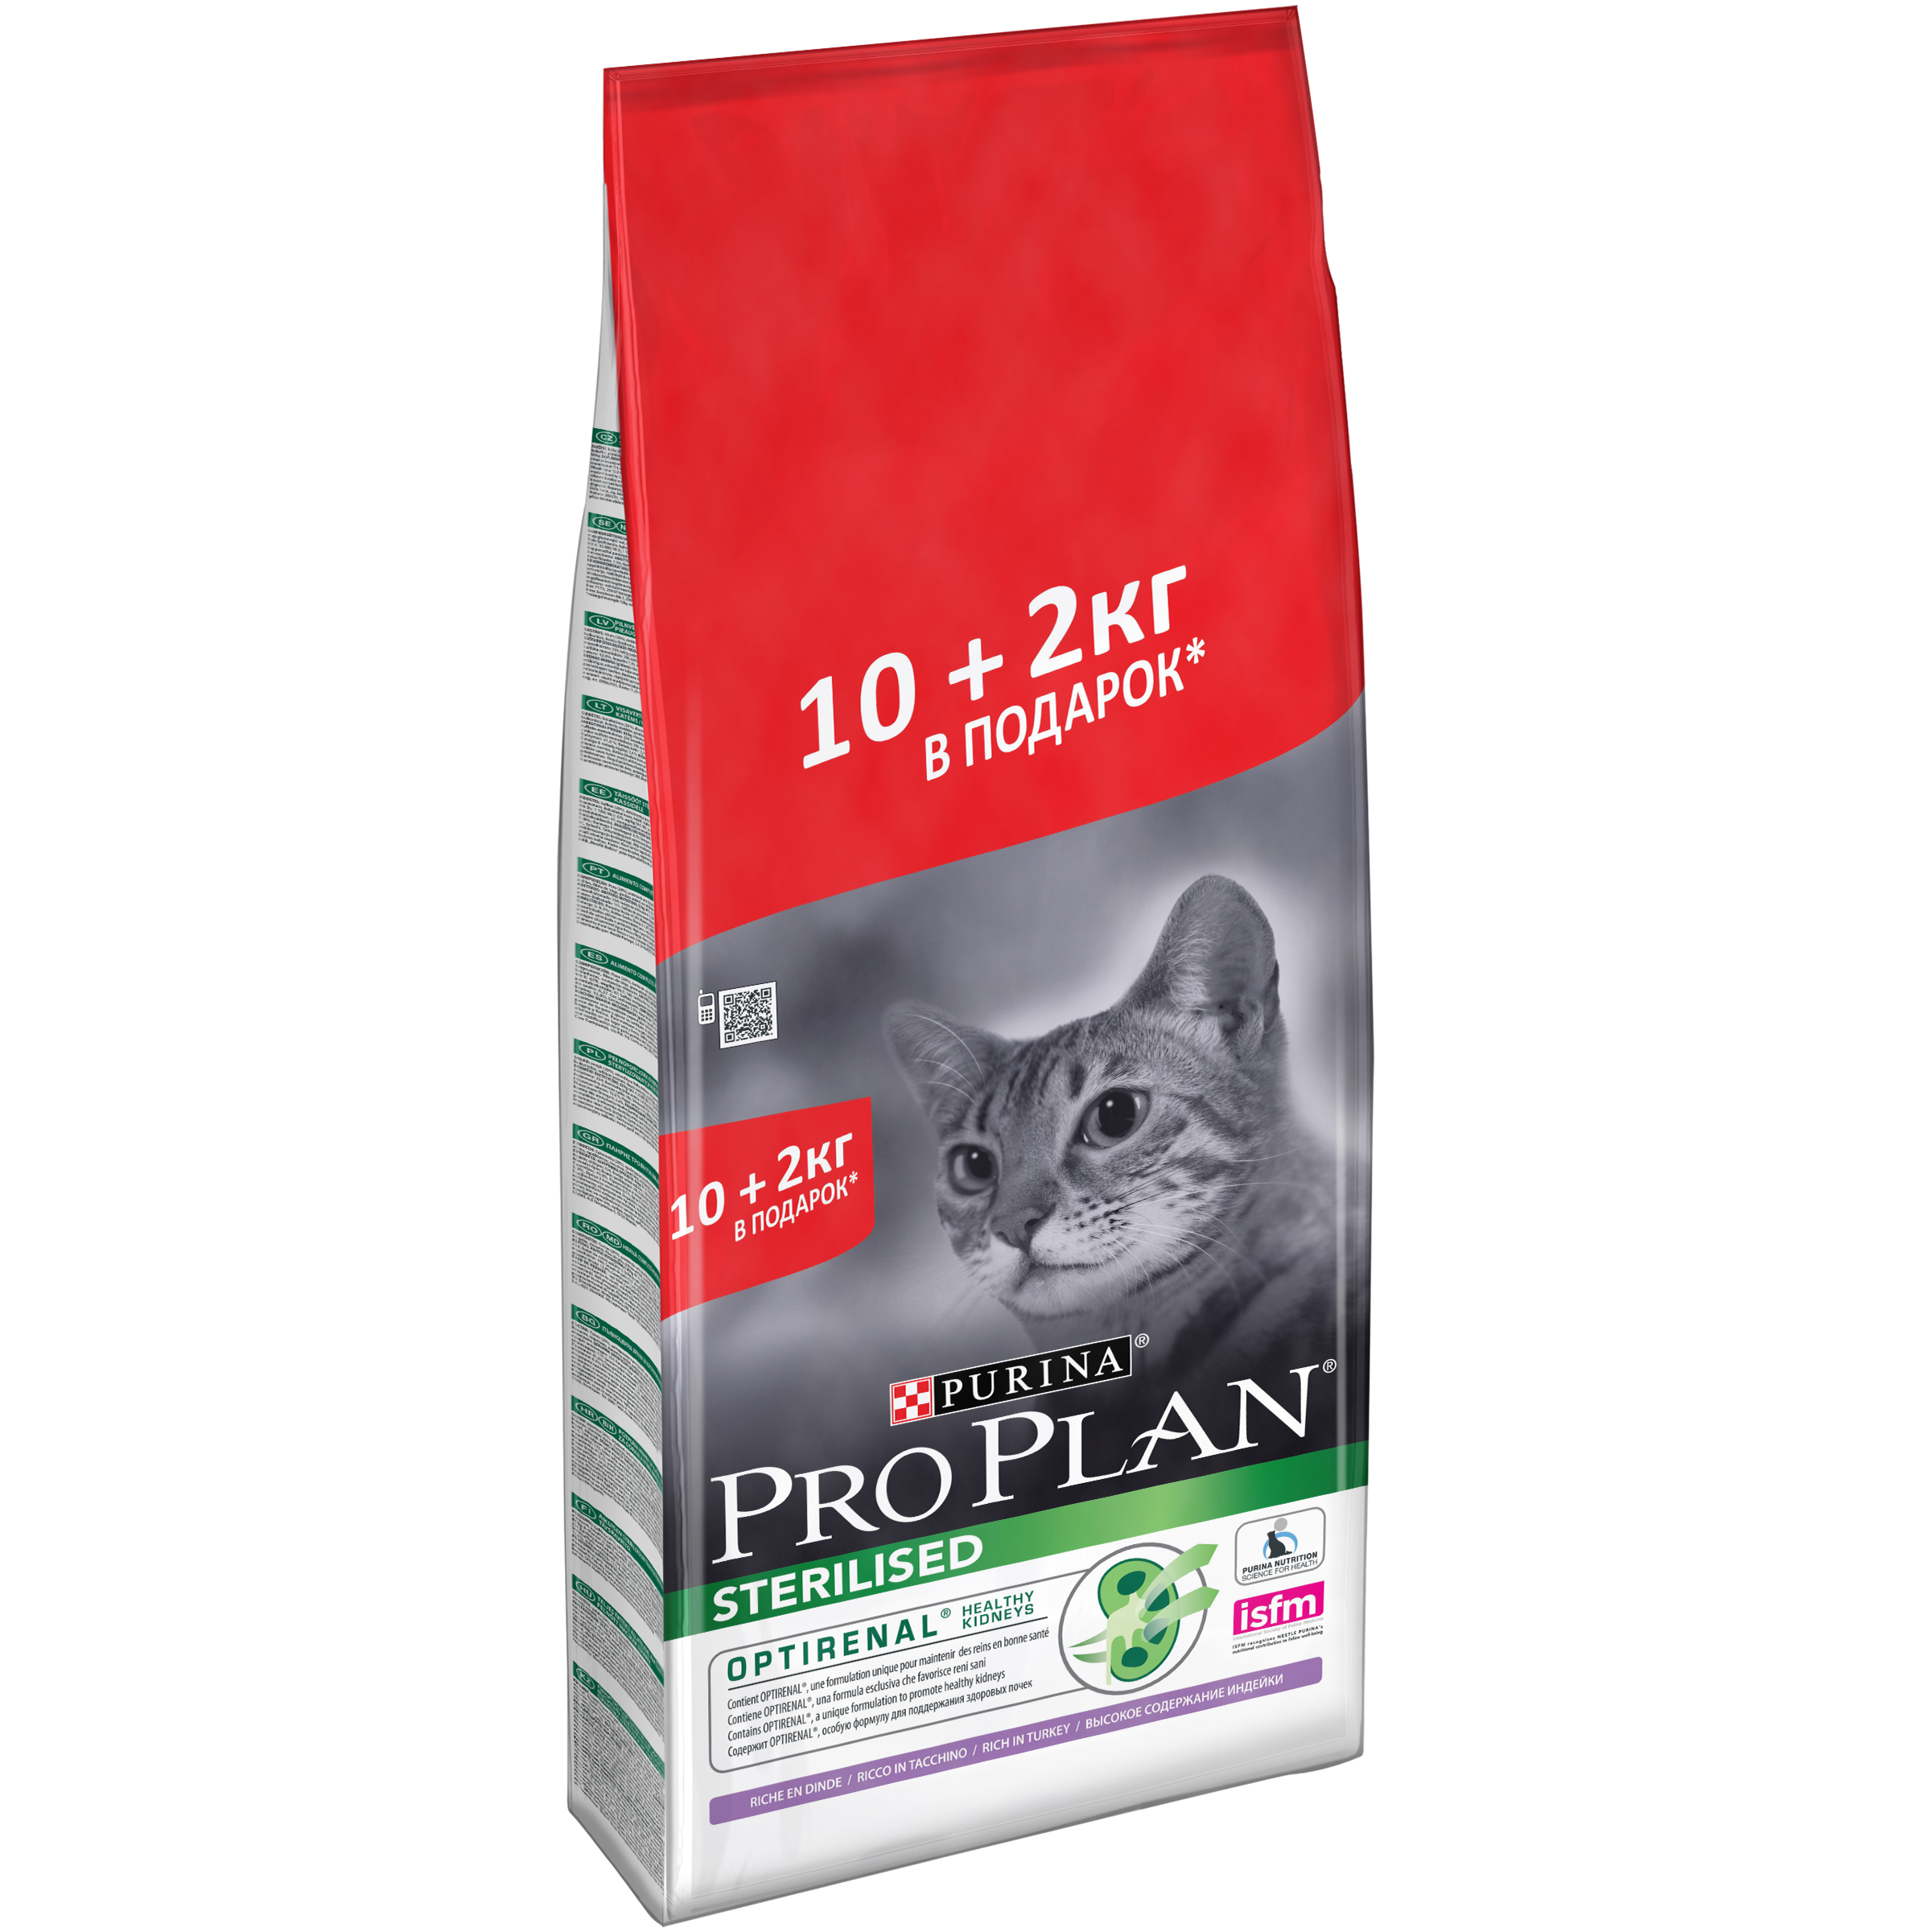 Купить проплан для кошек 10. PROPLAN Sterilised корм д/стерил кошек индейка 10 кг + 2 кг. Сухой корм для кошек Pro Plan Optirenal Sterilised с кроликом. Корм Проплан для кошек 10кг. Корм Purina Pro Plan для стерилизованных кошек 10.